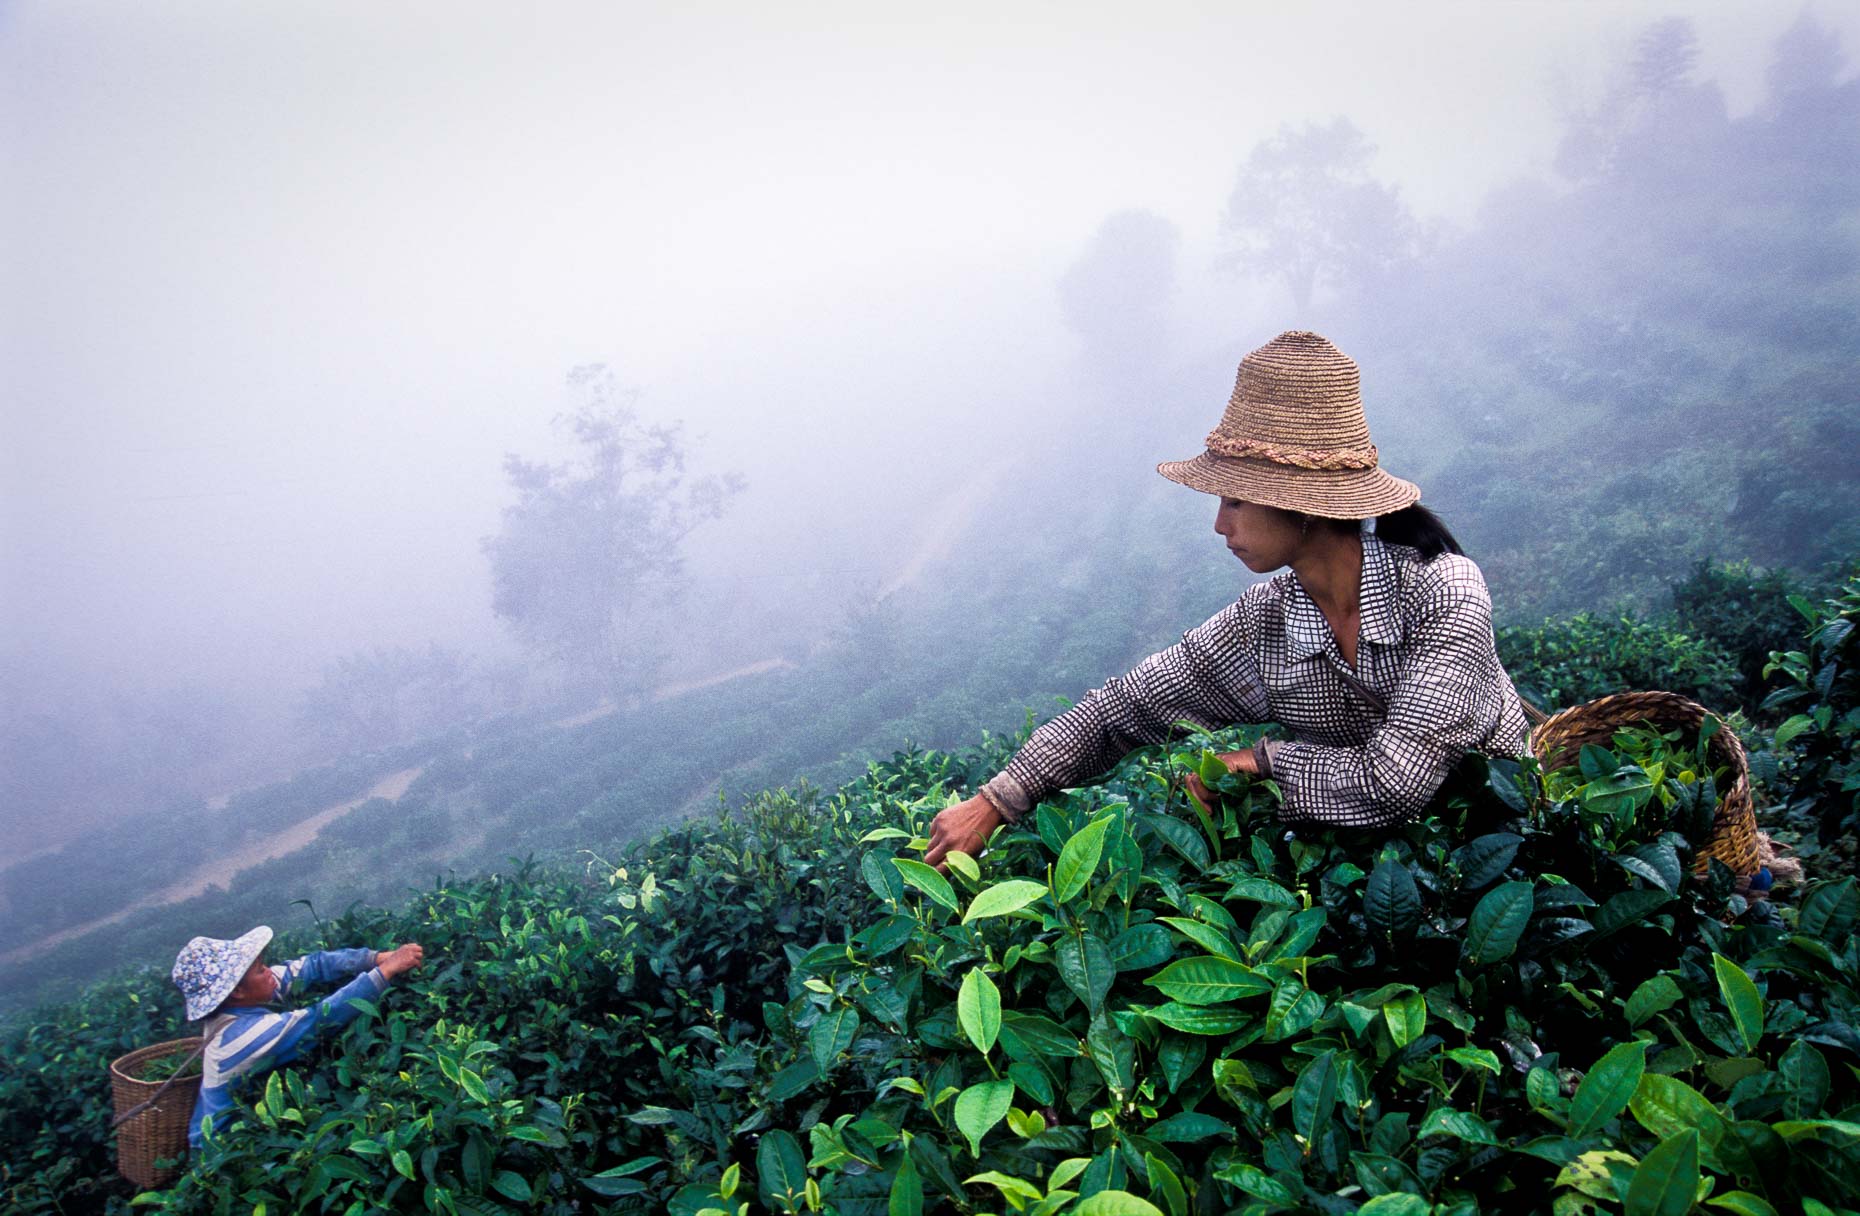 Tea picking in morning mist